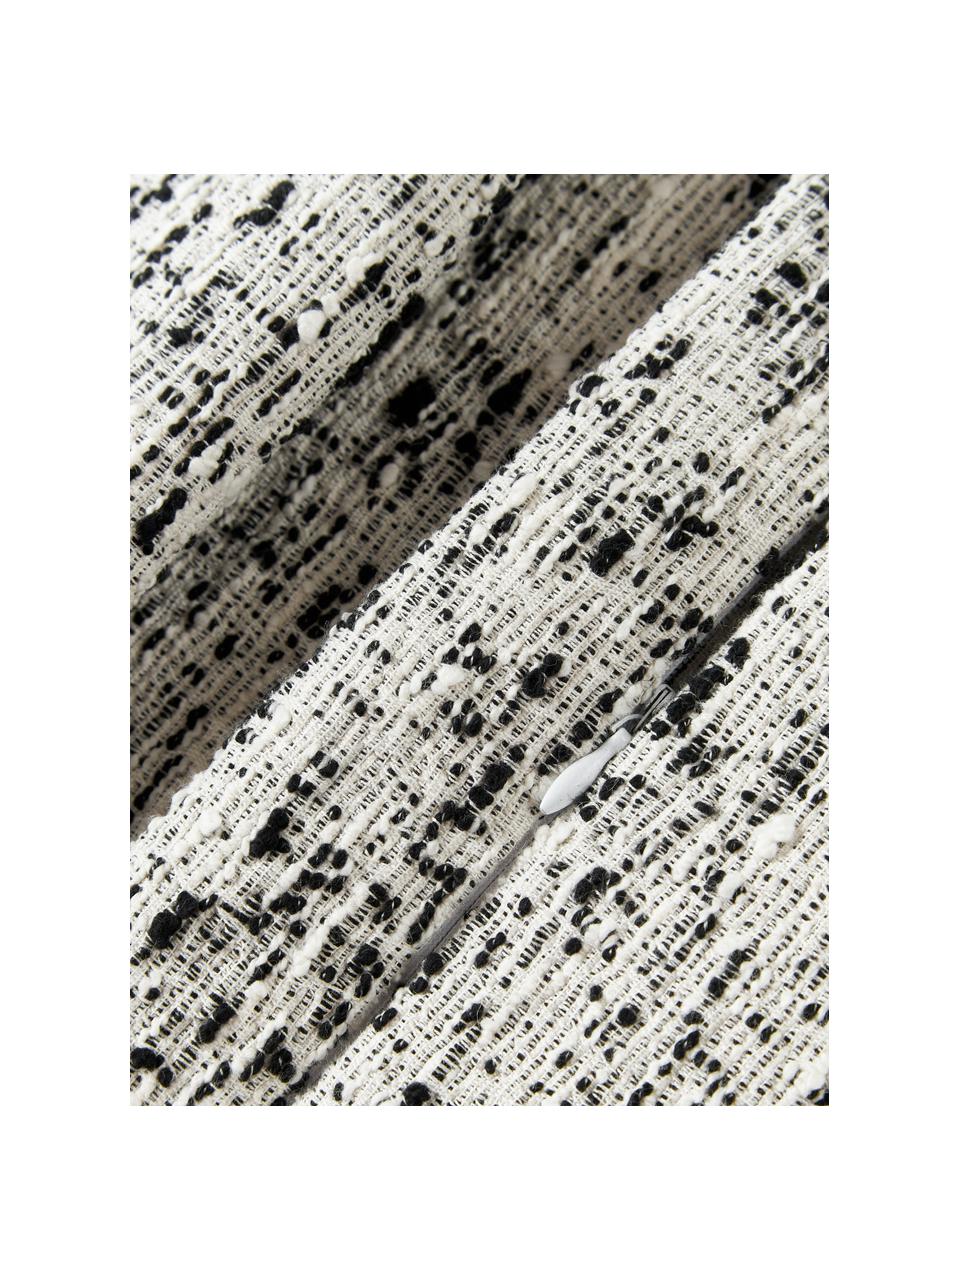 Bouclé povlak na polštář Talea, Bouclé (92 % bavlna, 8 % polyester)

Bouclé je materiál, který se vyznačuje nepravidelně zakřivenou strukturou. Charakteristický povrch vytvářejí vetkané smyčky z různých druhů přízí, které dávají tkanině jedinečnou strukturu. Smyčková struktura má izolační a zároveň nadýchaný efekt, díky němuž je tkanina obzvláště příjemná., Černá, bílá, Š 50 cm, D 50 cm